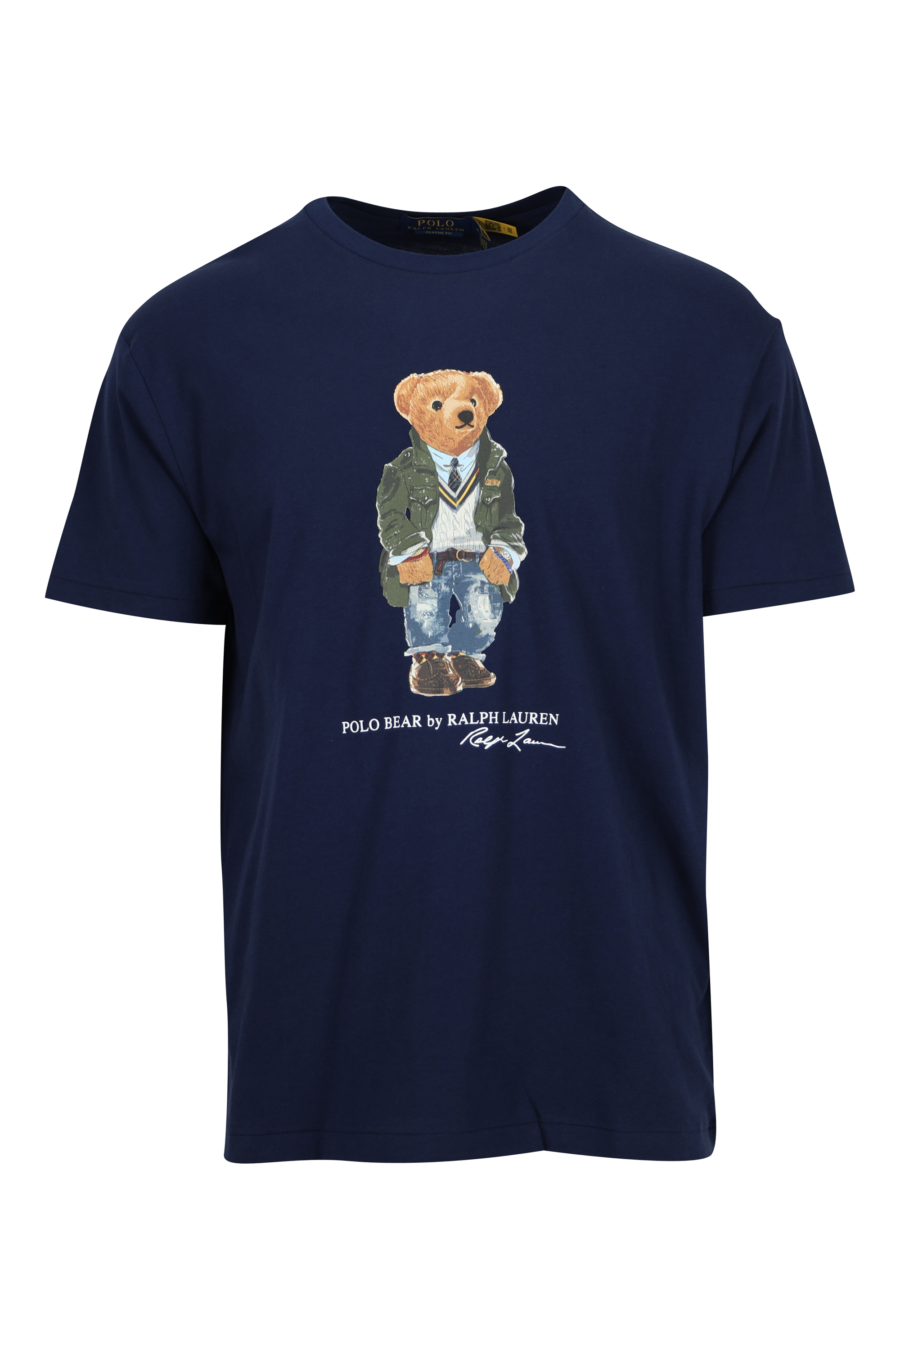 Camiseta azul oscura con maxilogo "polo bear" traje - 3616536168786